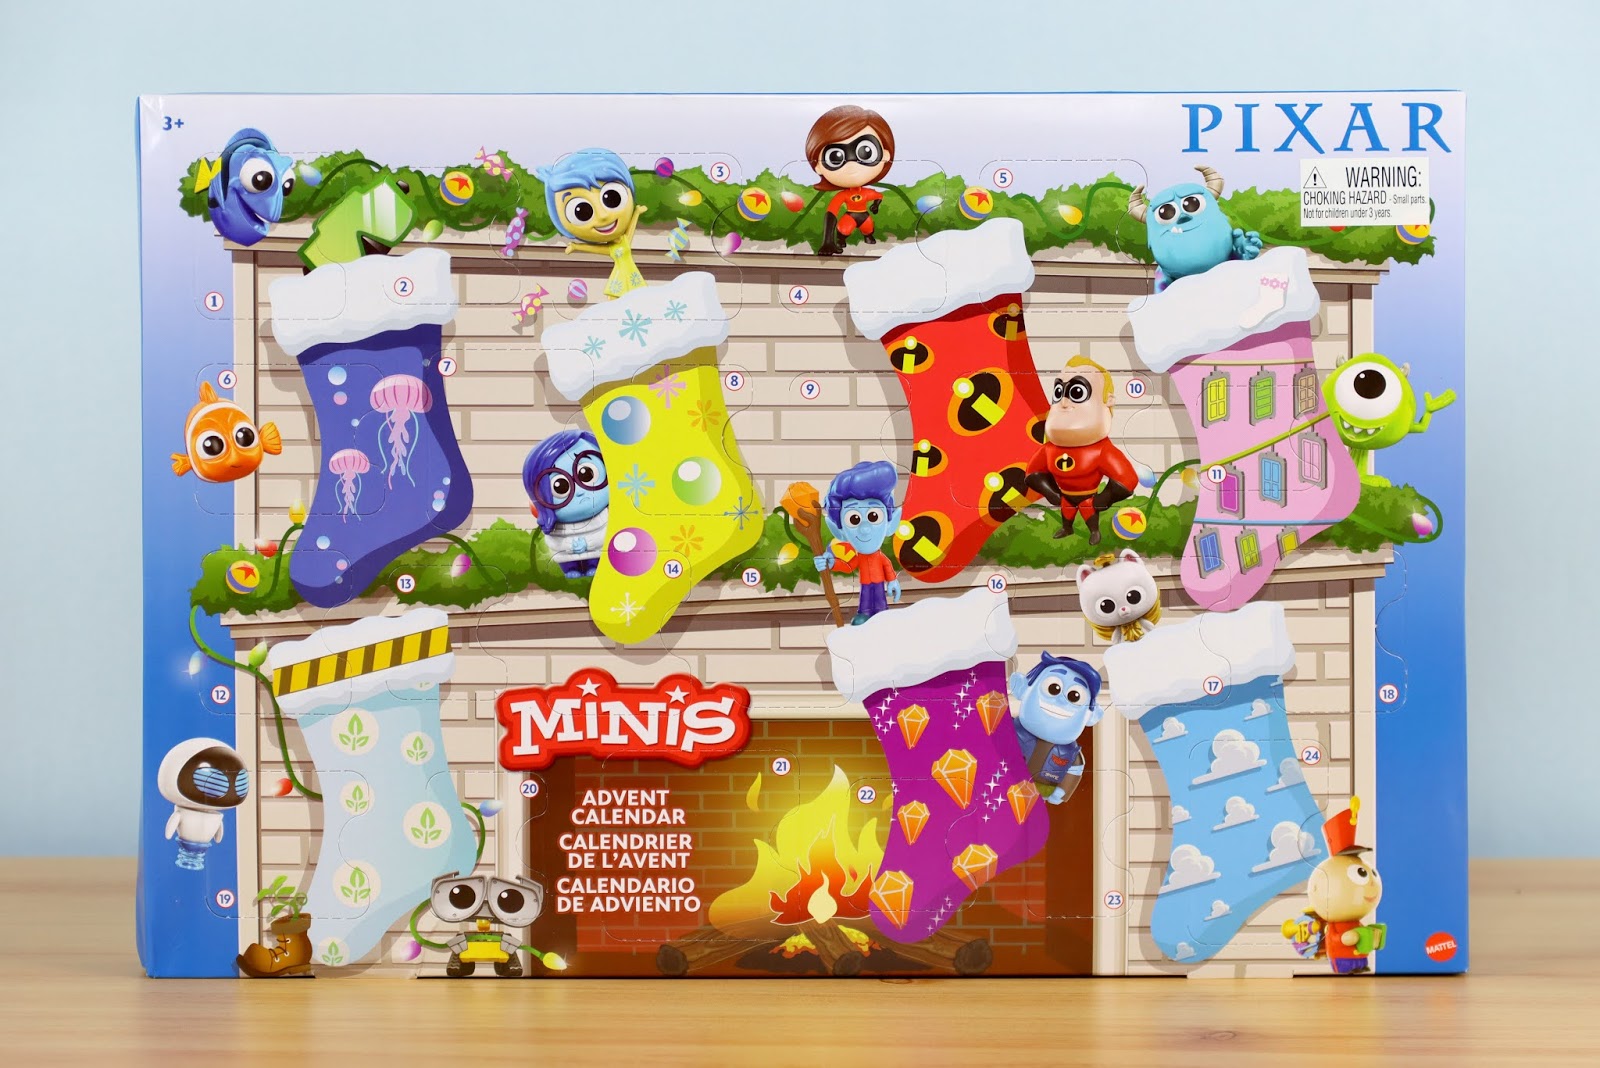 Dan the Pixar Fan Mattel Pixar Minis Advent Calendar Review!